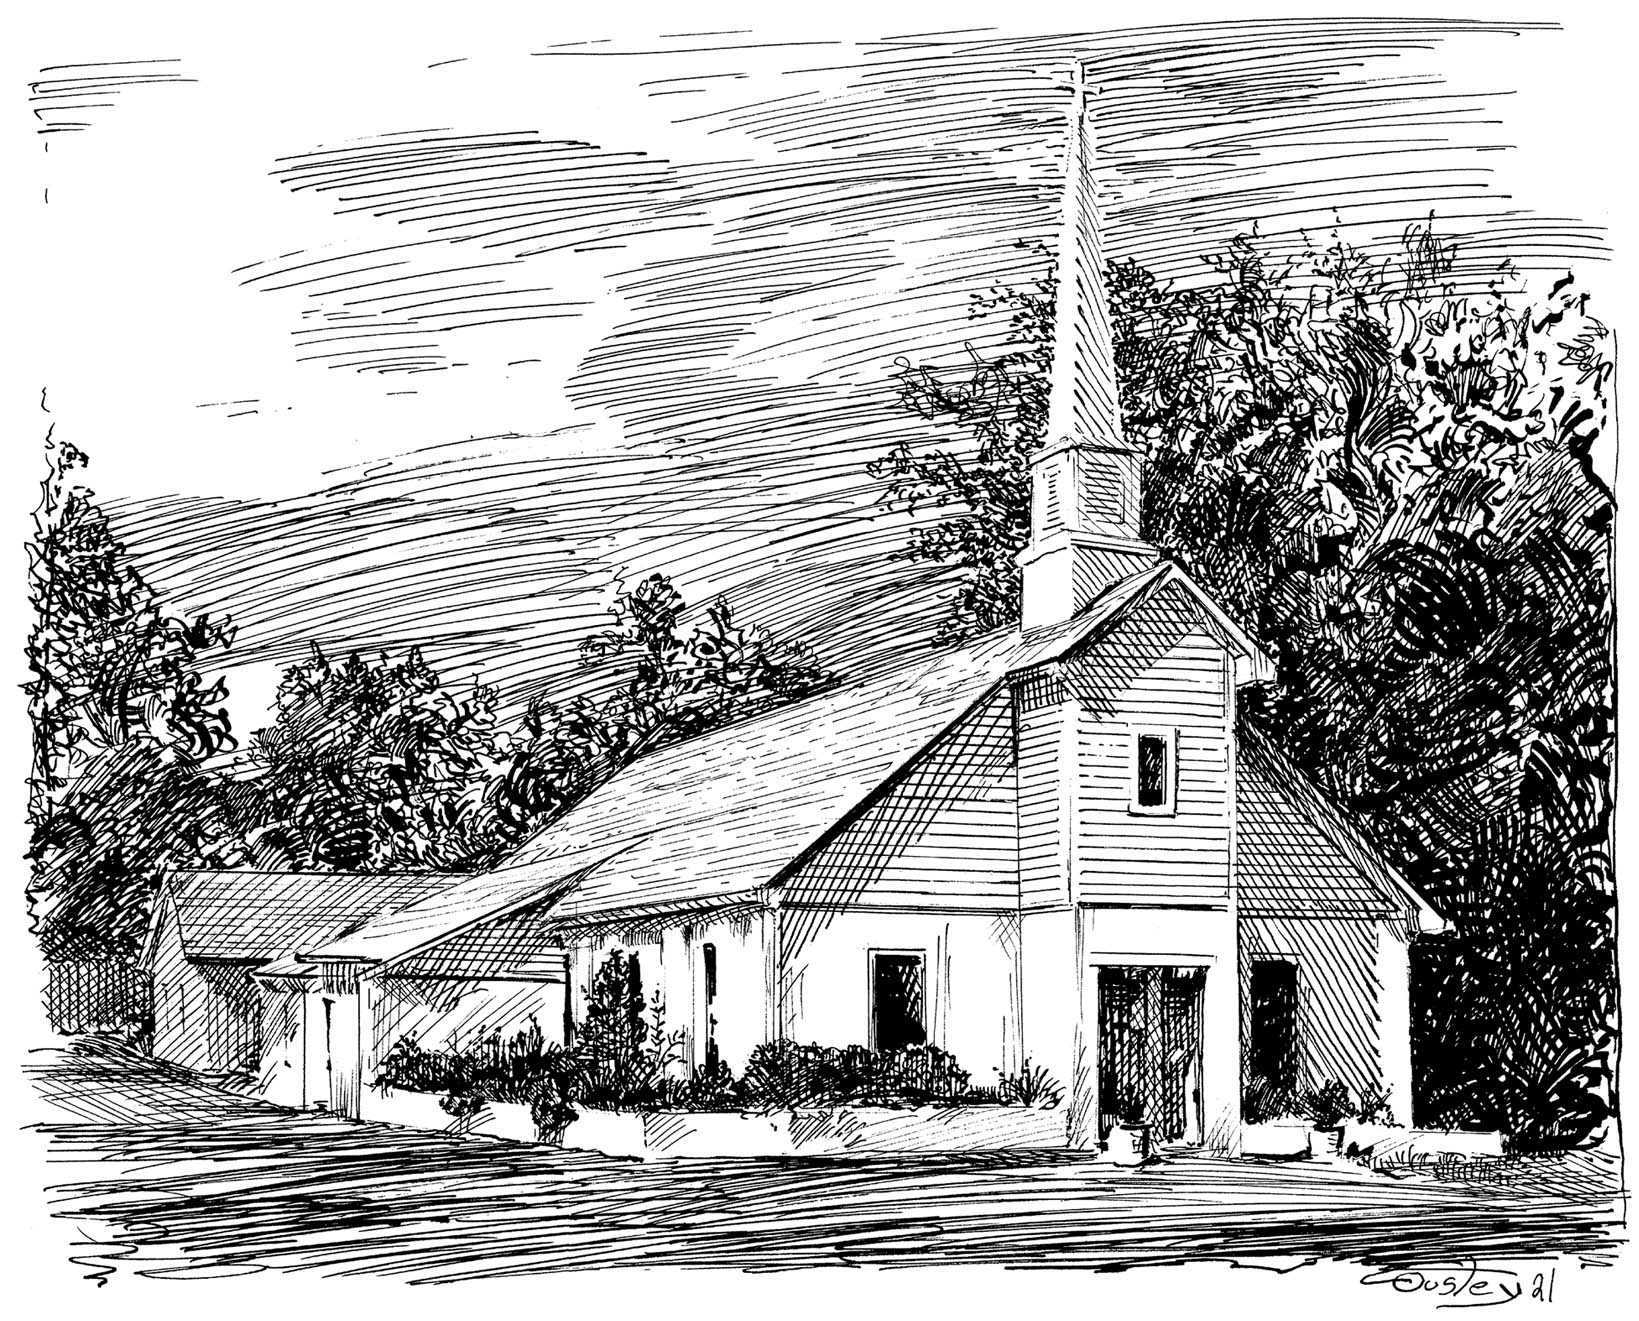 Ebenezer United Methodist Church in Nolensville TN